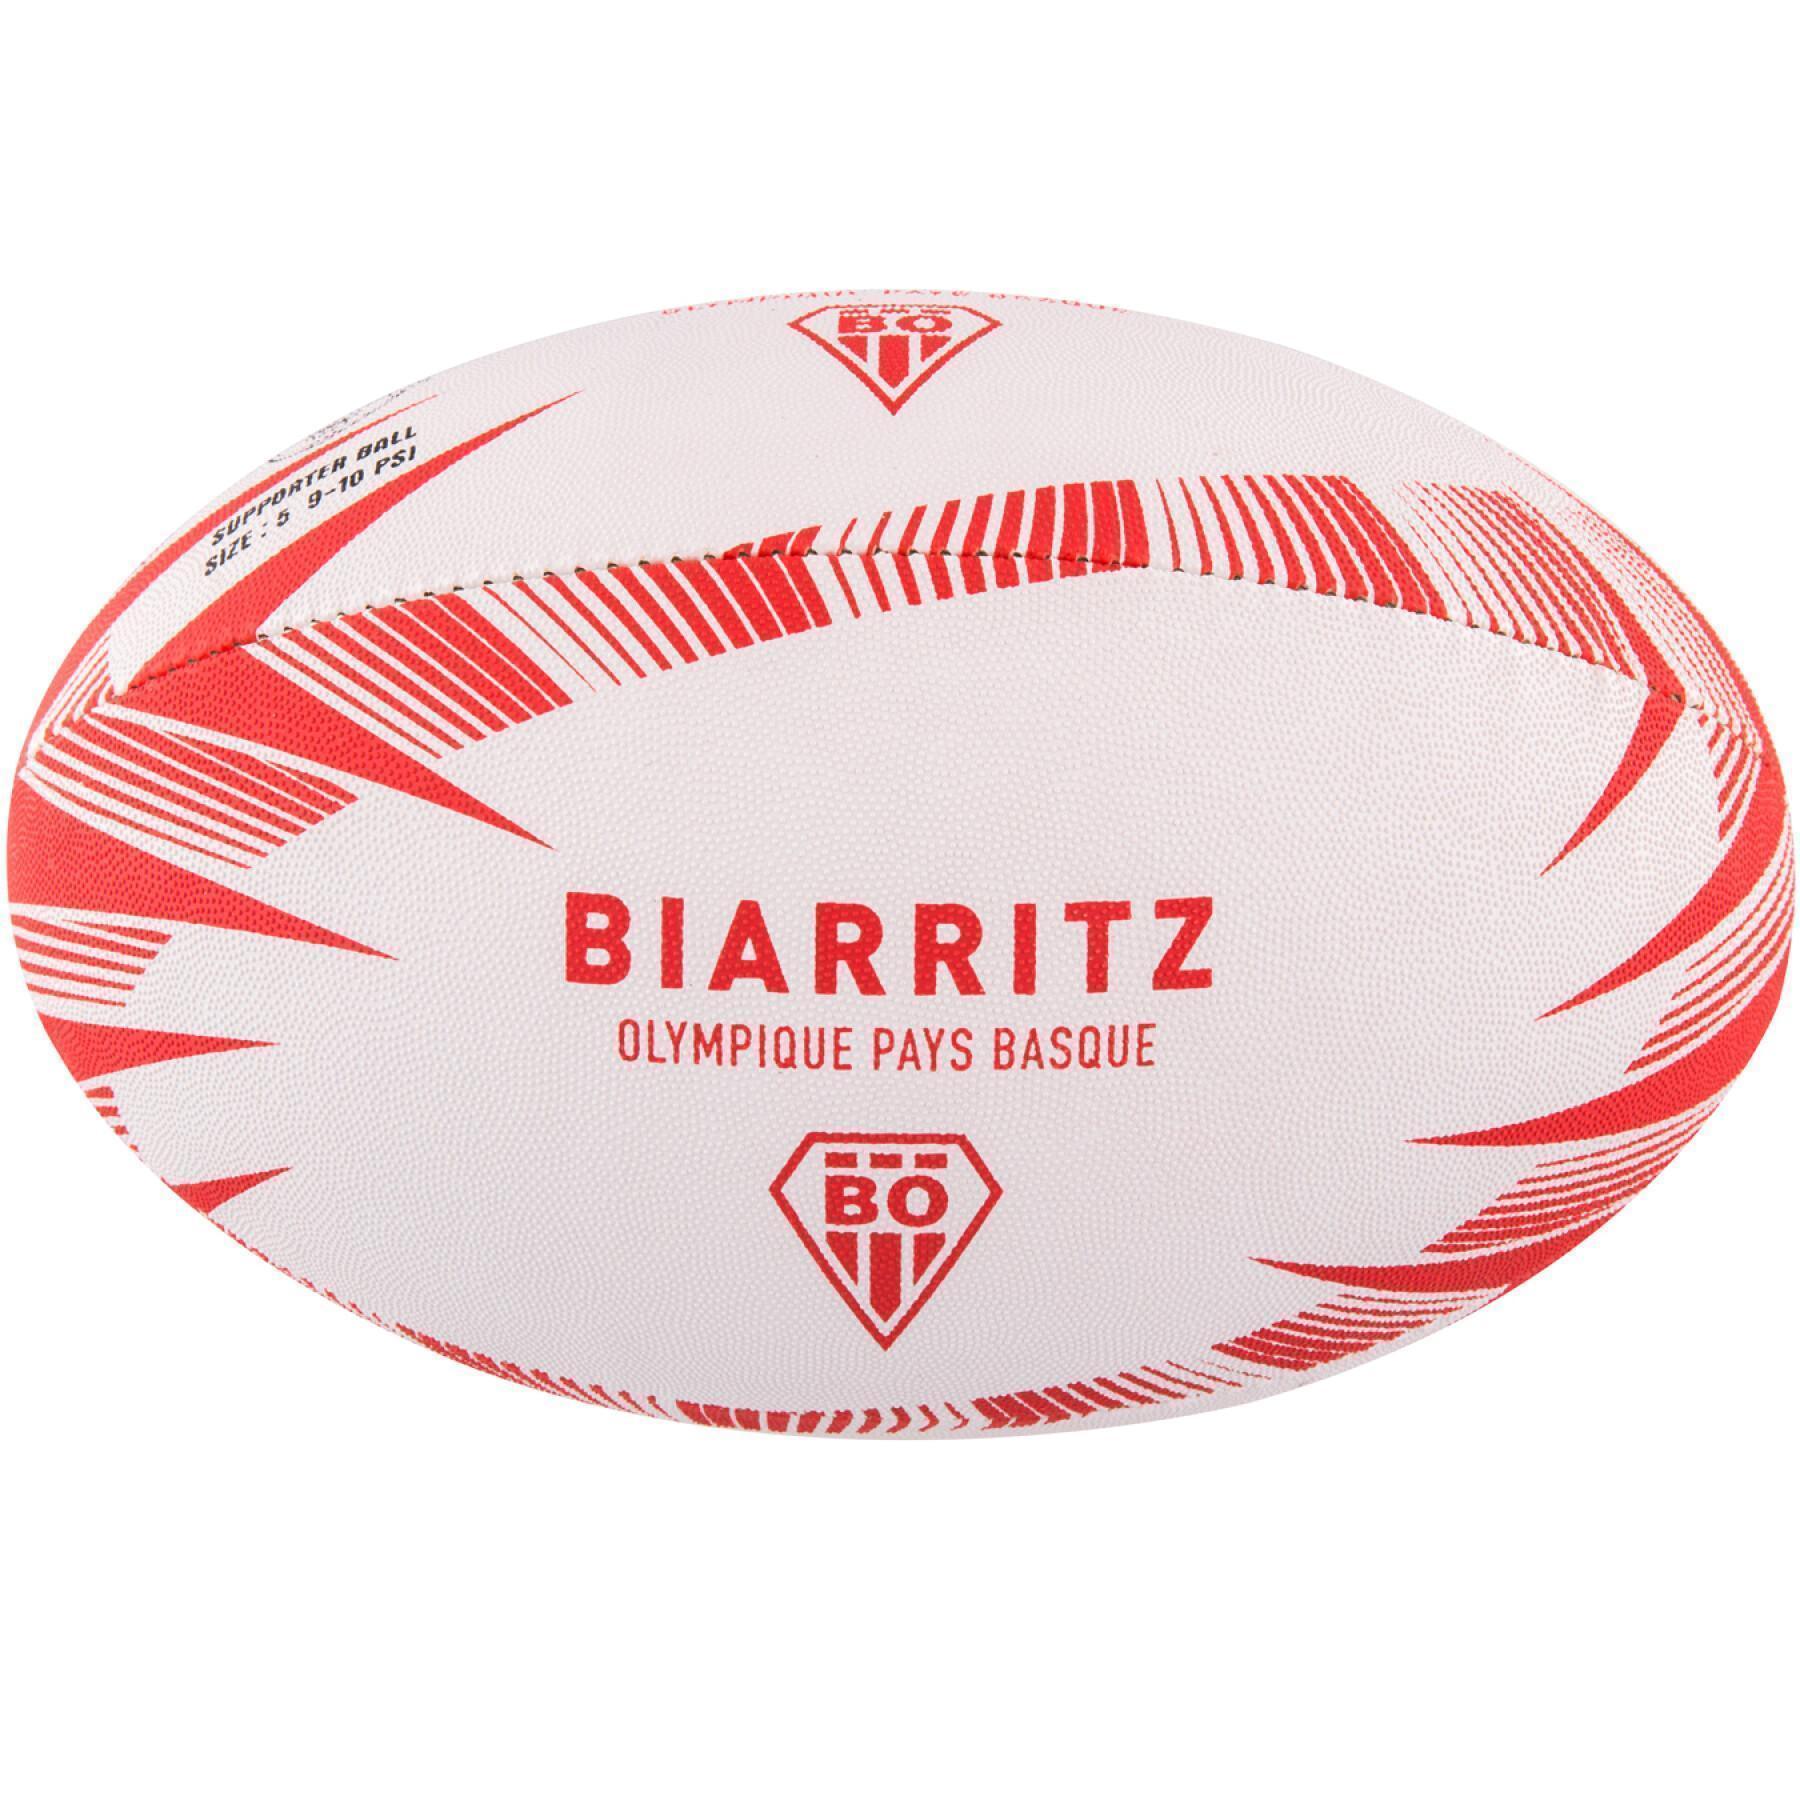 Balón de rugby supporter Gilbert Biarritz (talla 5)